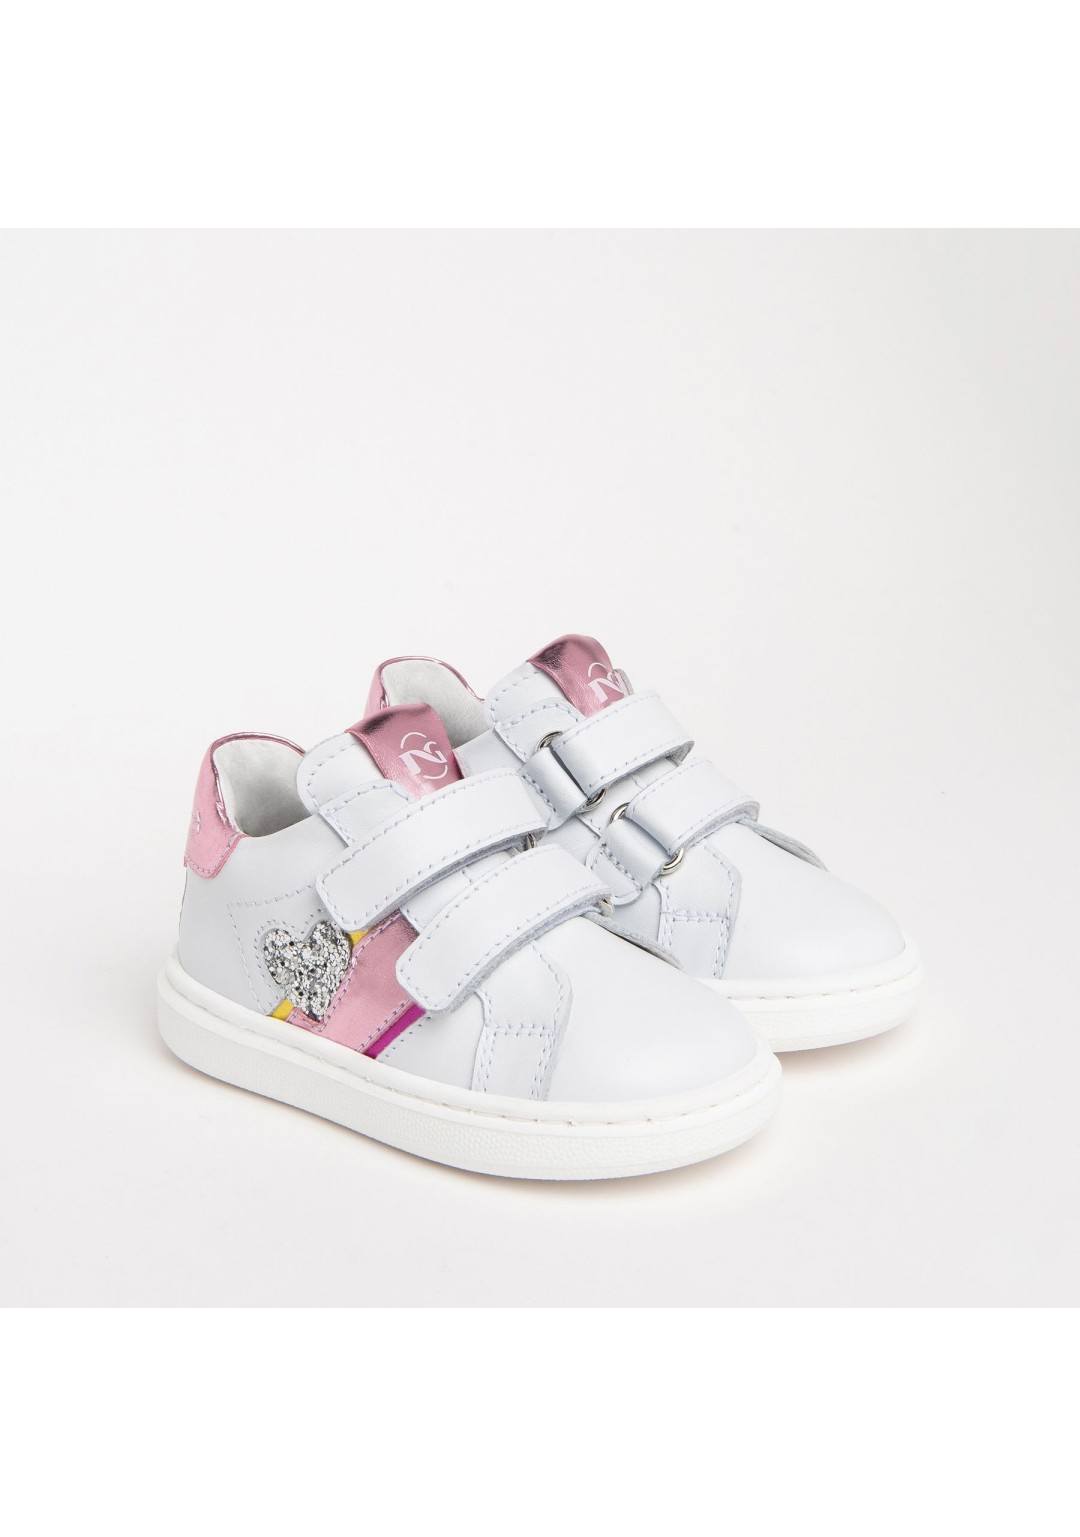 NEROGIARDINI - Sneakers Cuore - Bambine e ragazze - 374 F